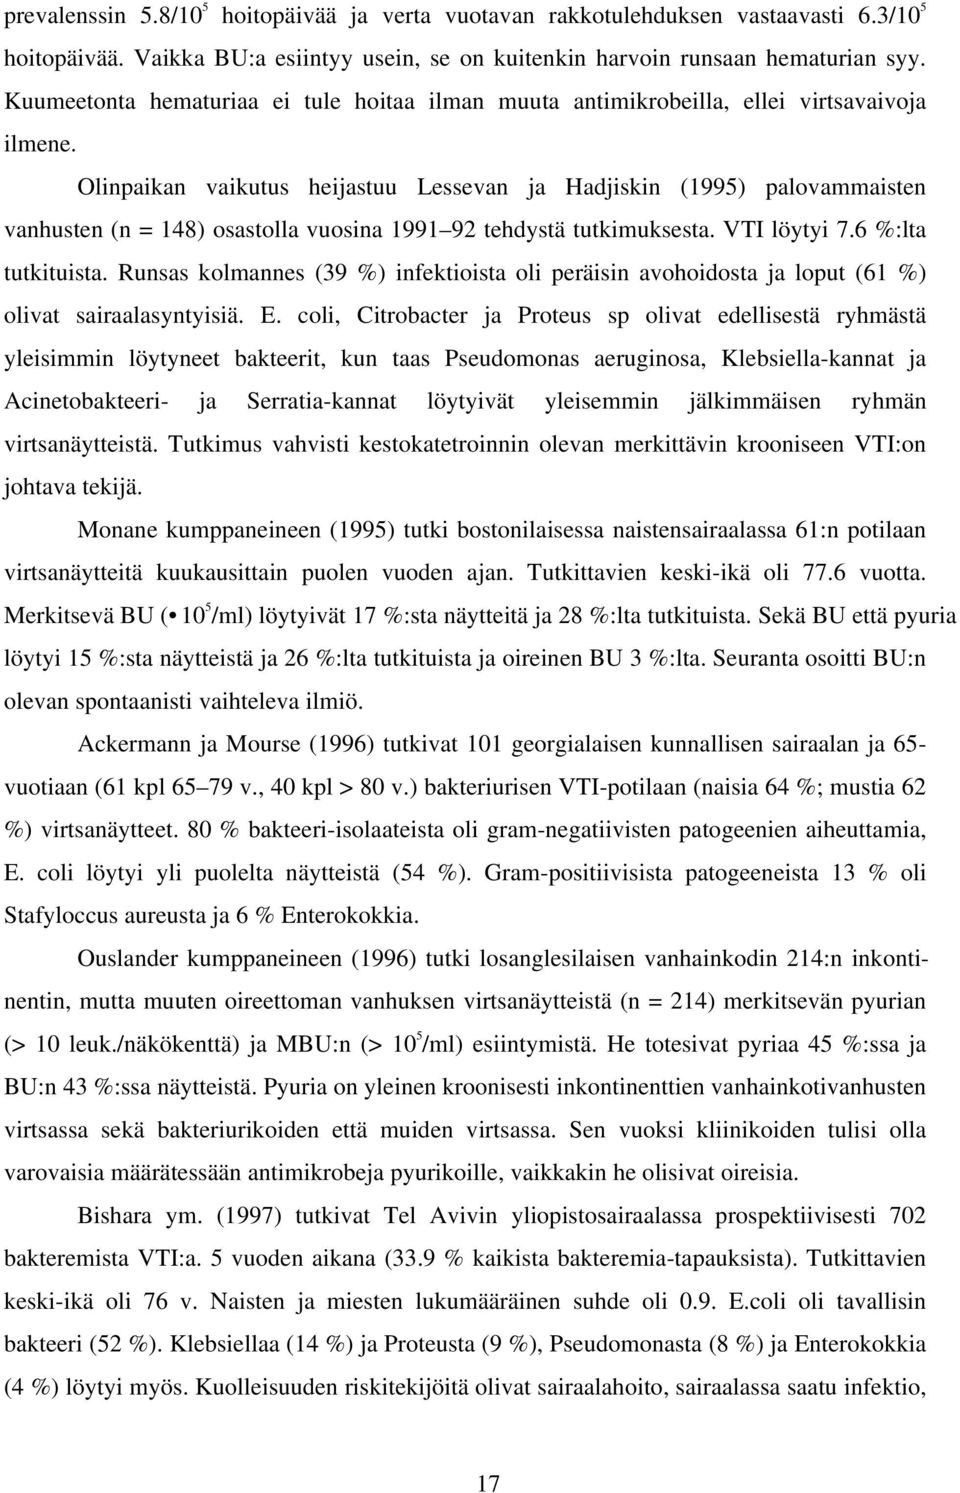 Olinpaikan vaikutus heijastuu Lessevan ja Hadjiskin (1995) palovammaisten vanhusten (n = 148) osastolla vuosina 1991 92 tehdystä tutkimuksesta. VTI löytyi 7.6 %:lta tutkituista.